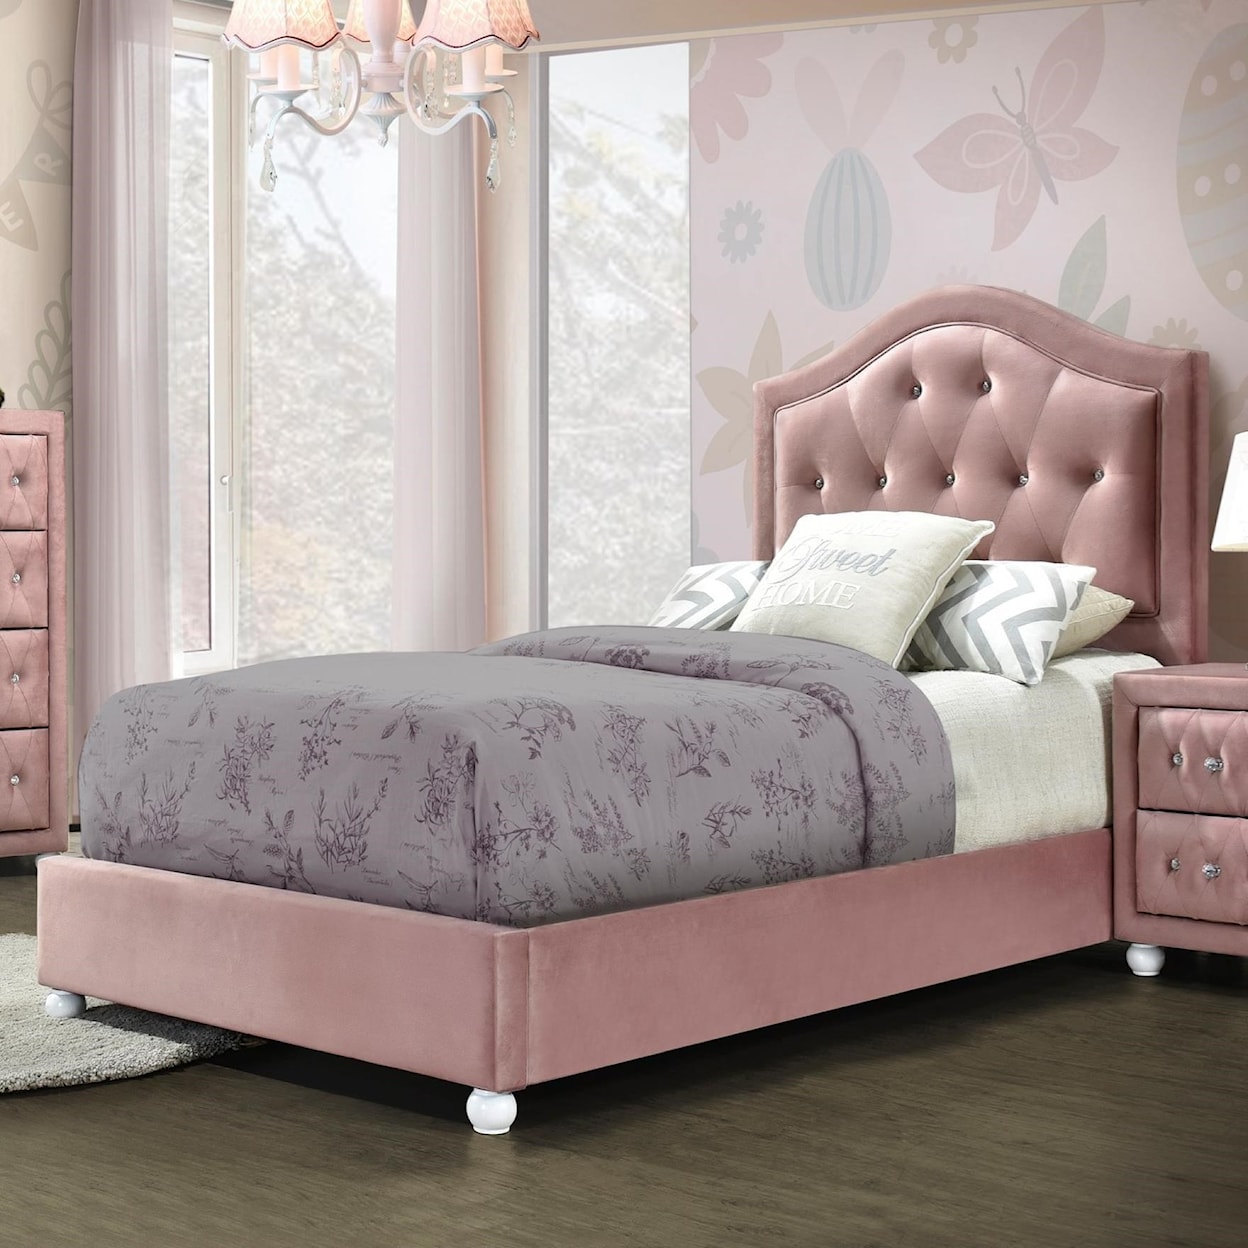 Acme Furniture Reggie Full Bed